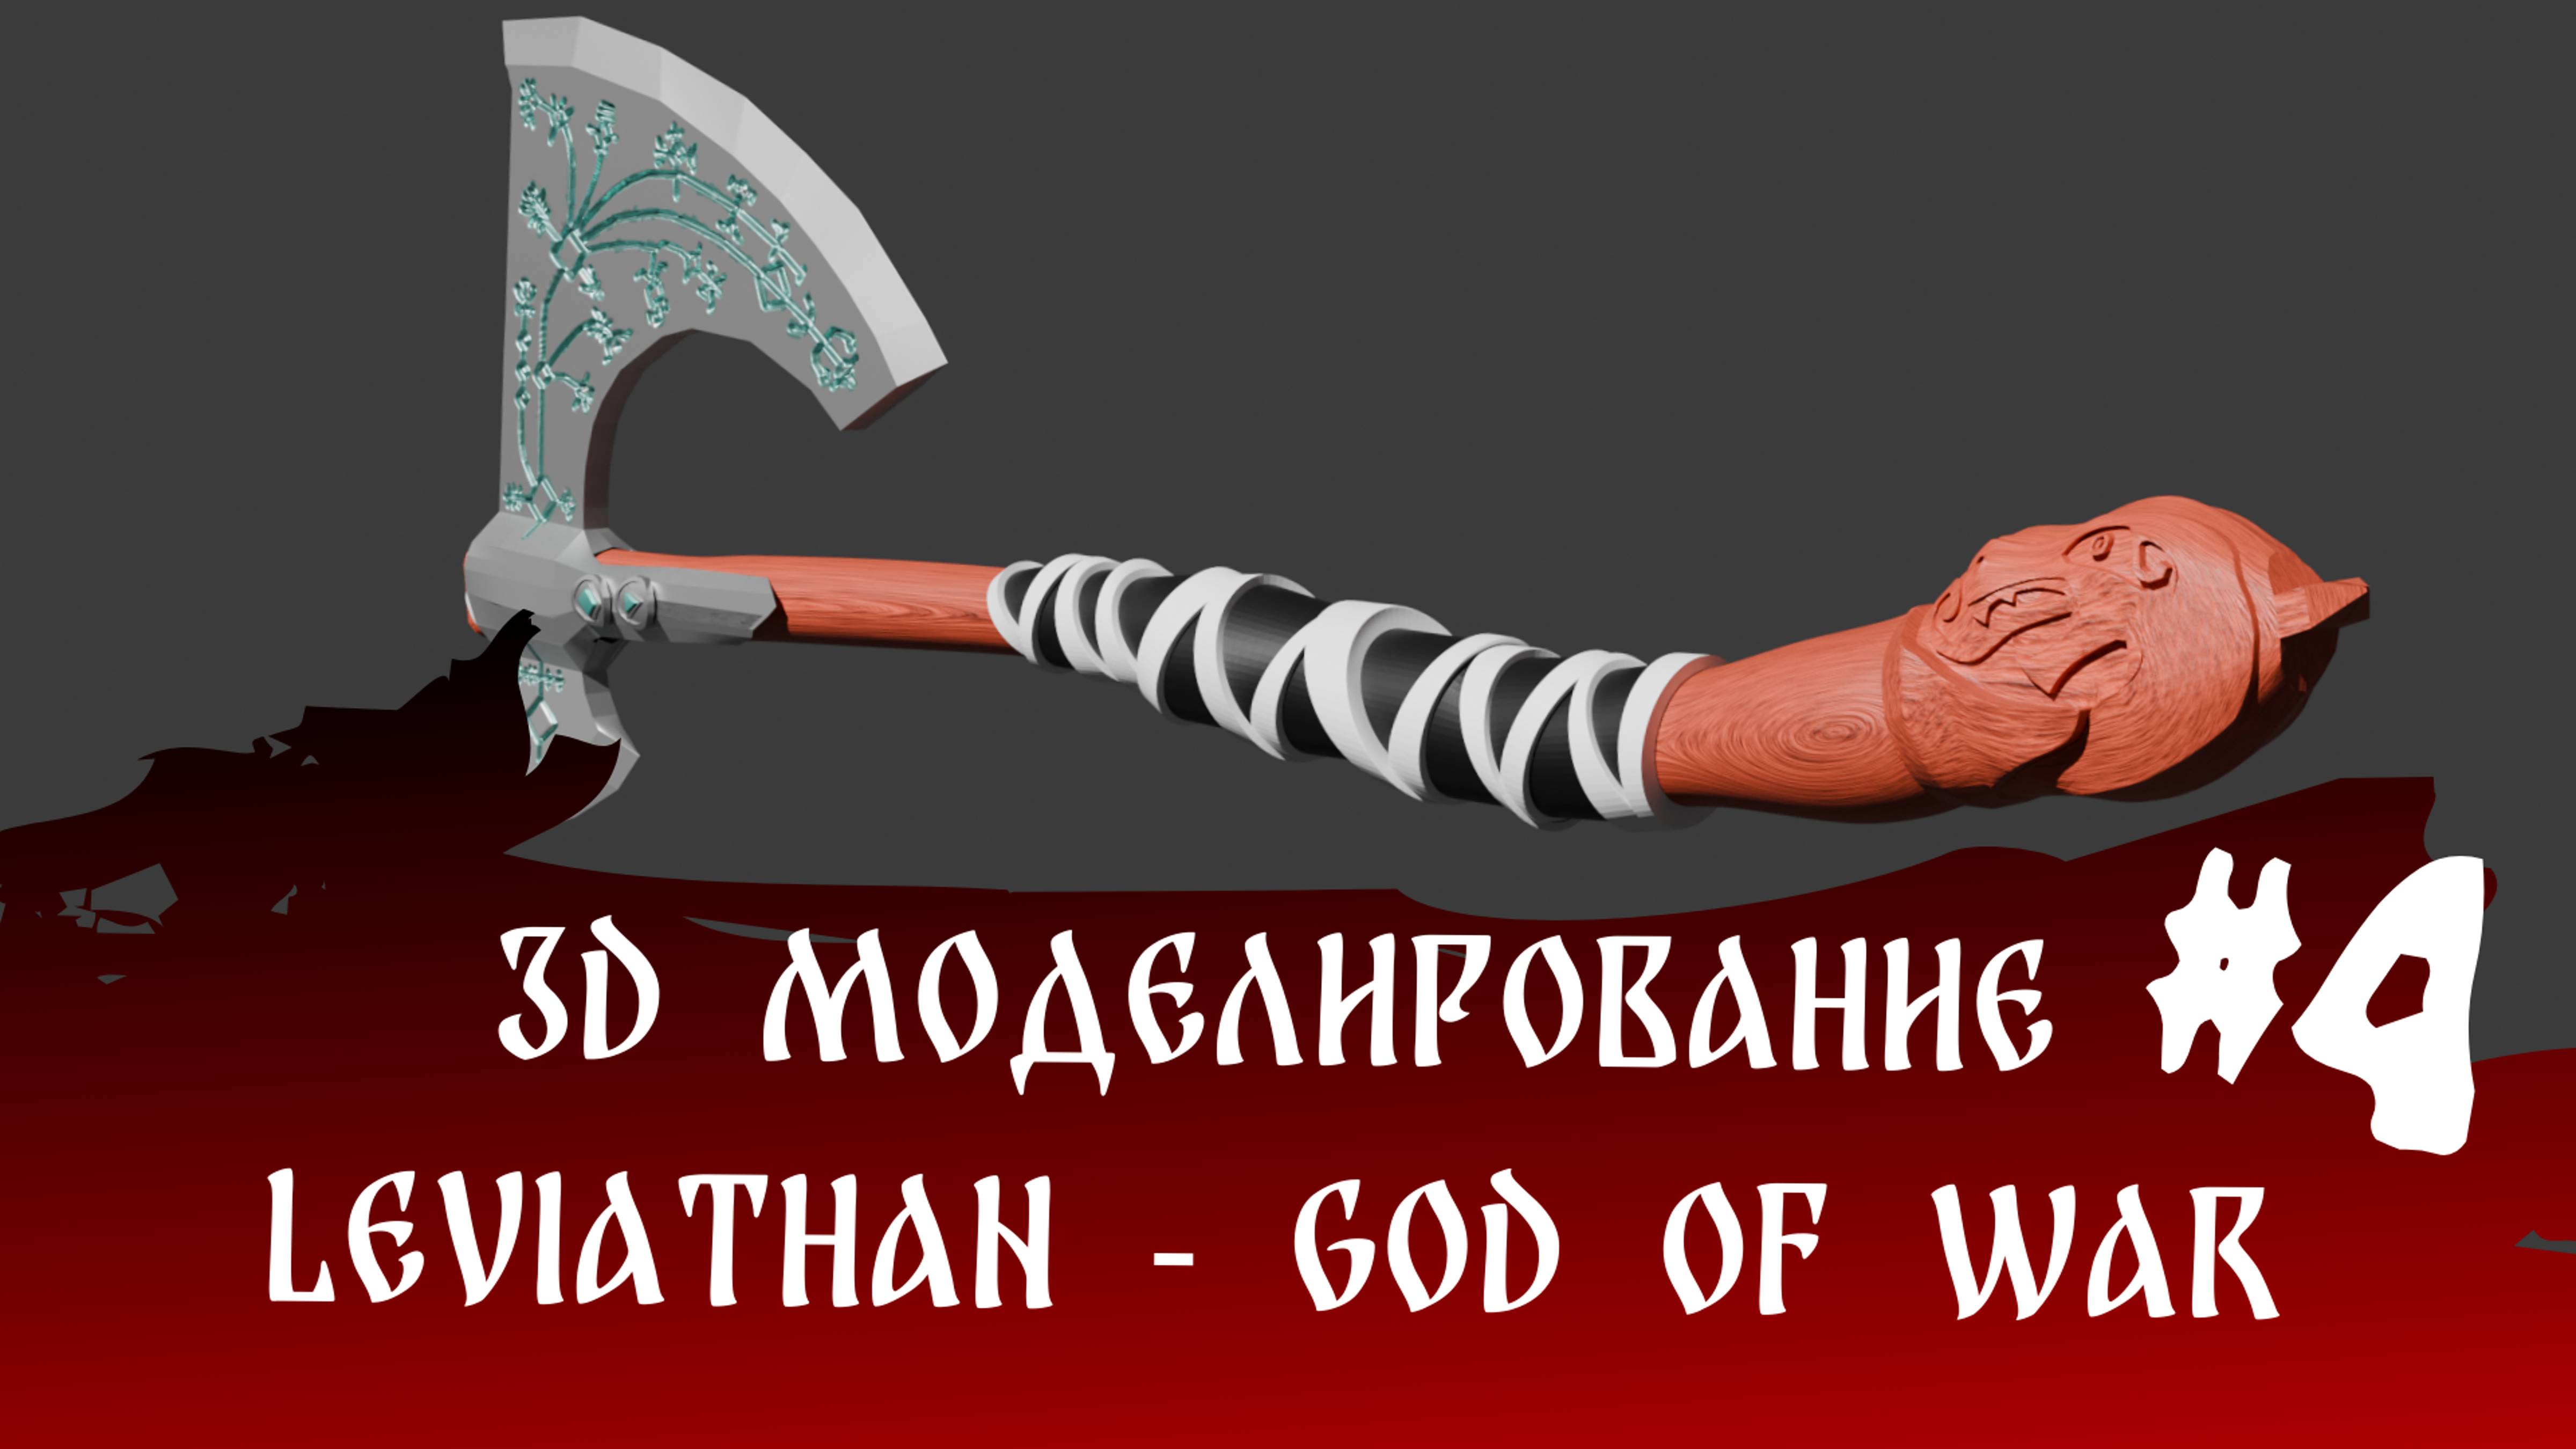 3d моделирование - Leviathan - God of WaR Часть 4